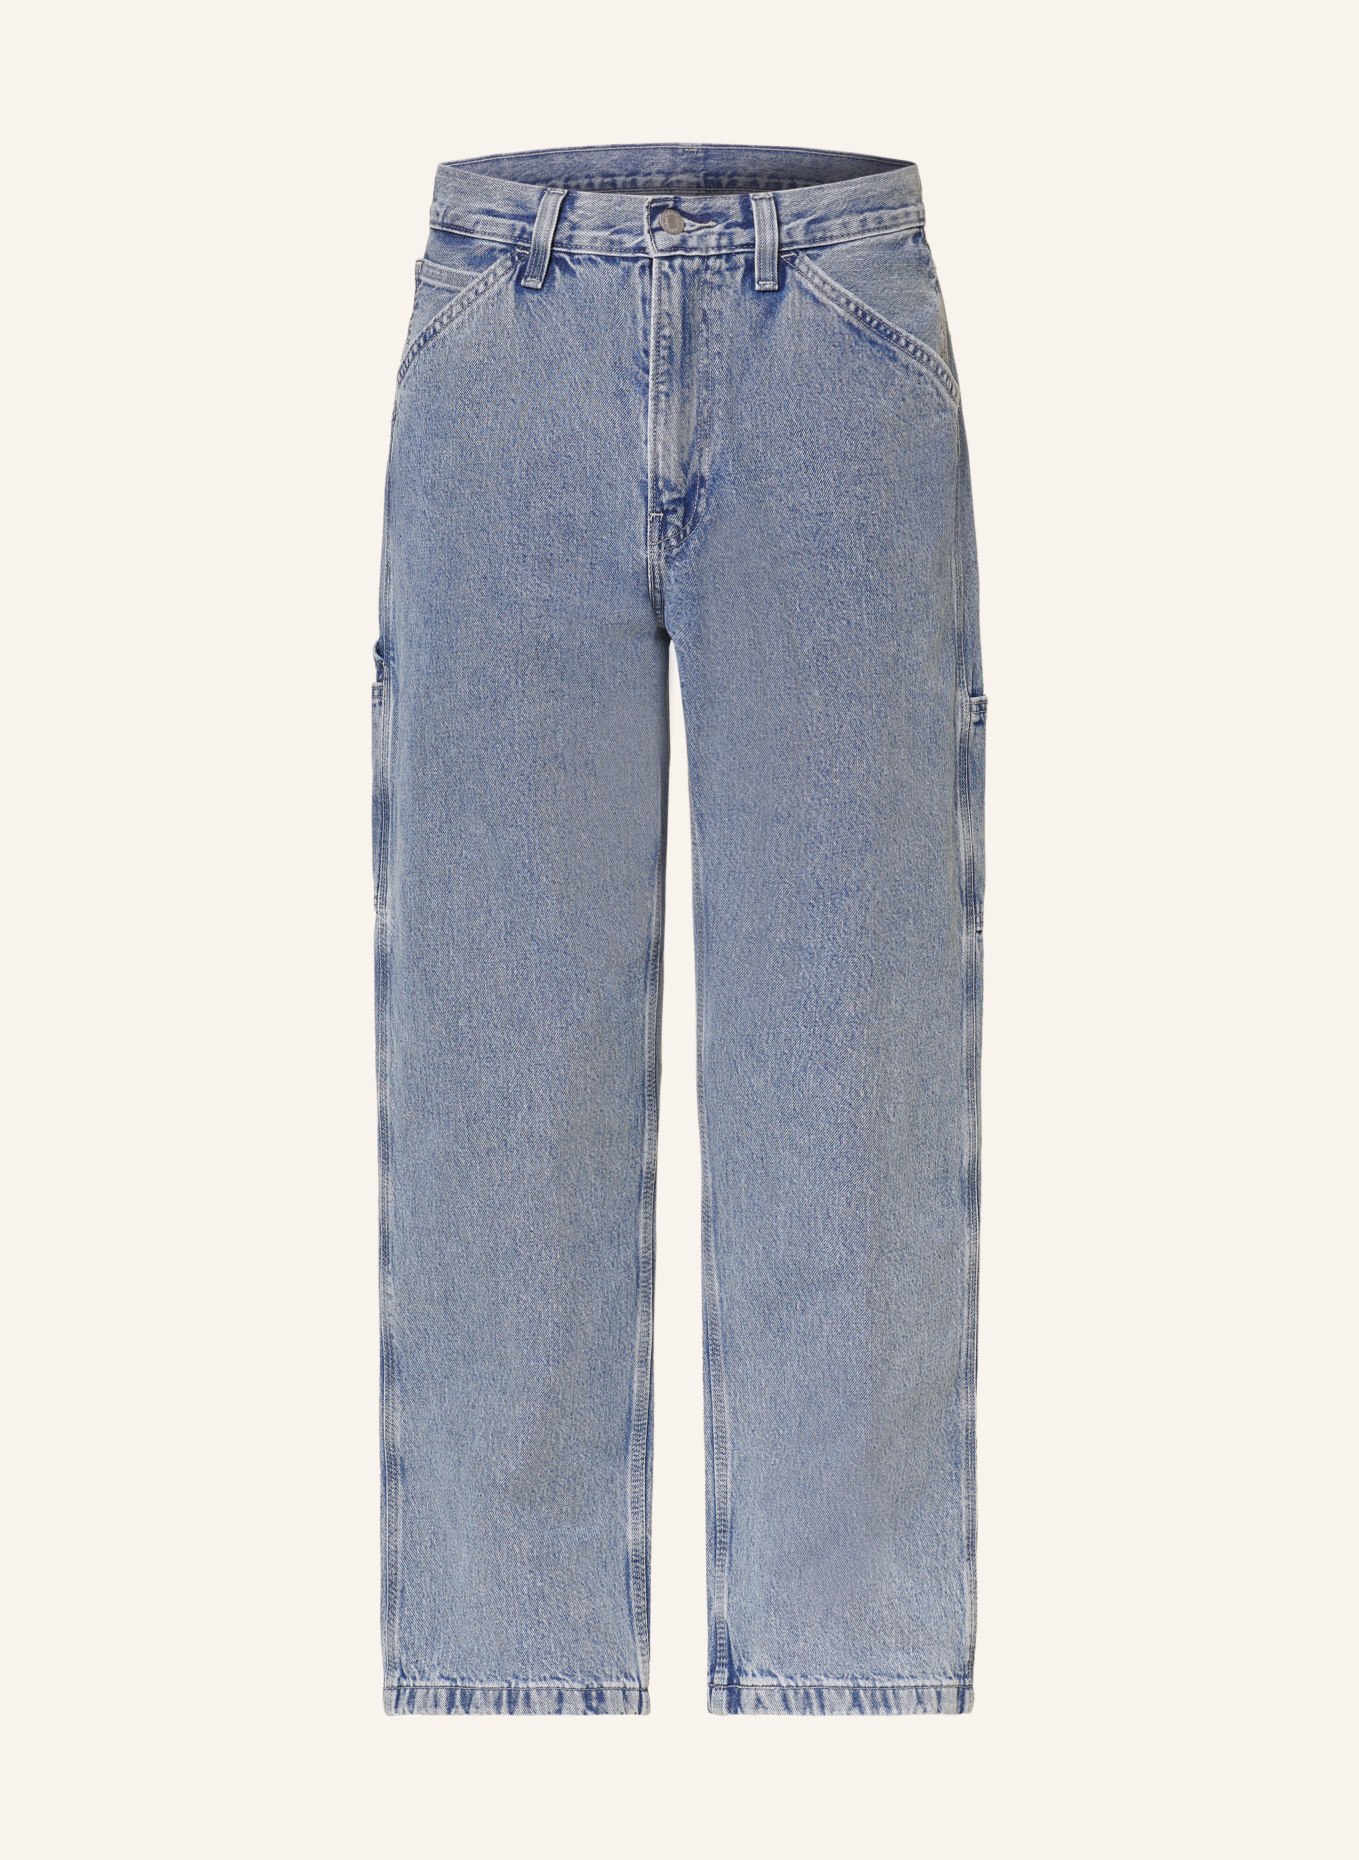 Levi's® Jeans 568 STAY LOOSE CARPENTER regular fit, Color: 47 Med Indigo - Flat Finish (Image 1)